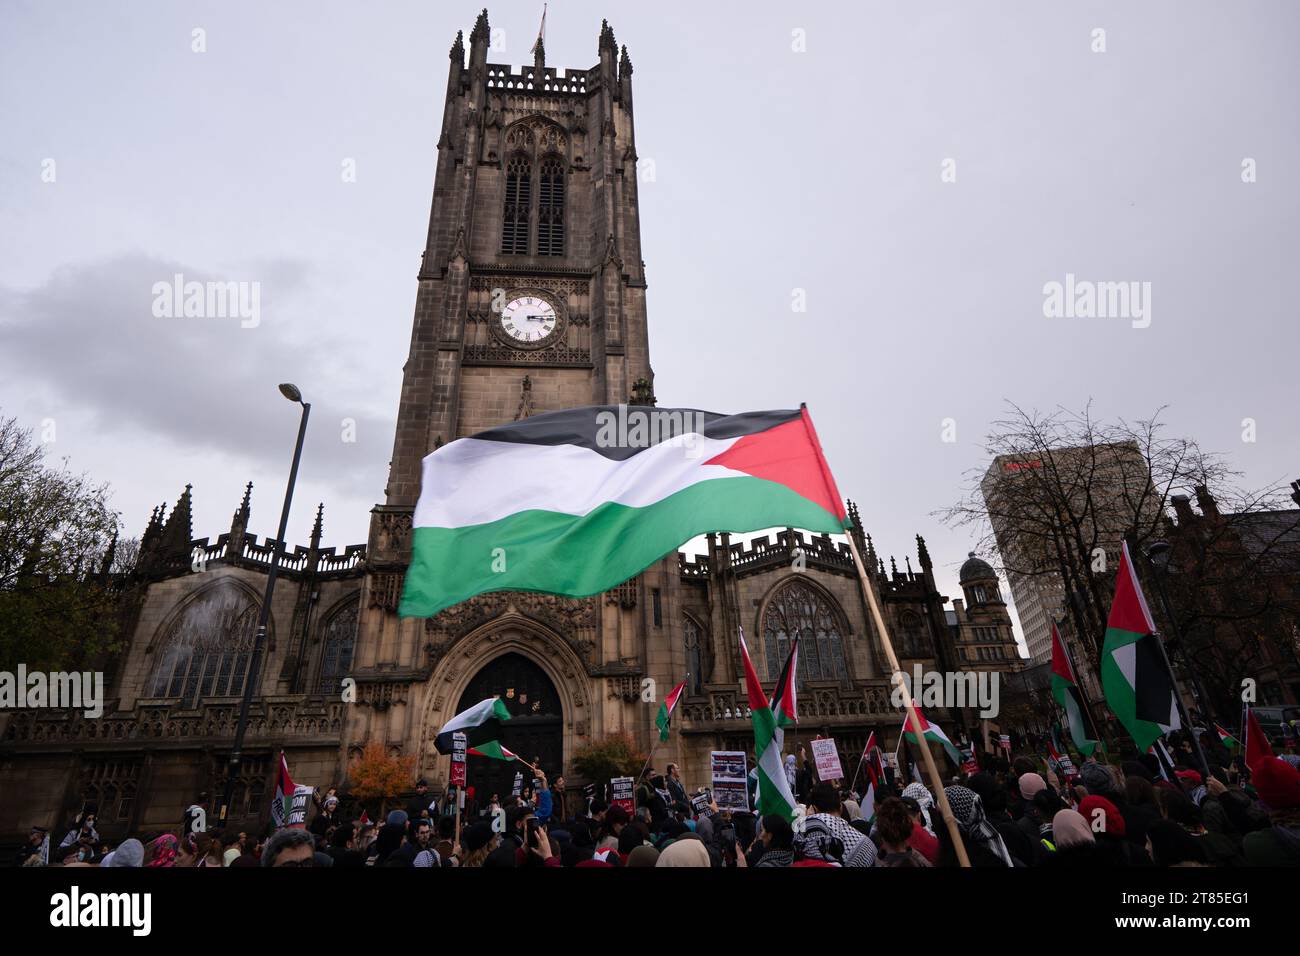 Manifestants devant la cathédrale de Manchester lors d'une manifestation palestinienne dans le centre de Manchester. ROYAUME-UNI. Plus d'un millier de manifestants se sont rassemblés à Whitworth Park pour réclamer un cessez-le-feu. Ils ont ensuite marché devant l'université de Manchester le long d'Oxford Rd jusqu'au centre-ville. La police gardait des points de vente qui, selon les manifestants, avaient des liens avec Israël, y compris McDonalds et Fisher Geram. La marche s'est terminée à la cathédrale de Manchester où certains manifestants ont monté la balustrade de la cathédrale et brandi des drapeaux. Manchester UK. Photo : garyroberts/worldwidefeatures.com Banque D'Images